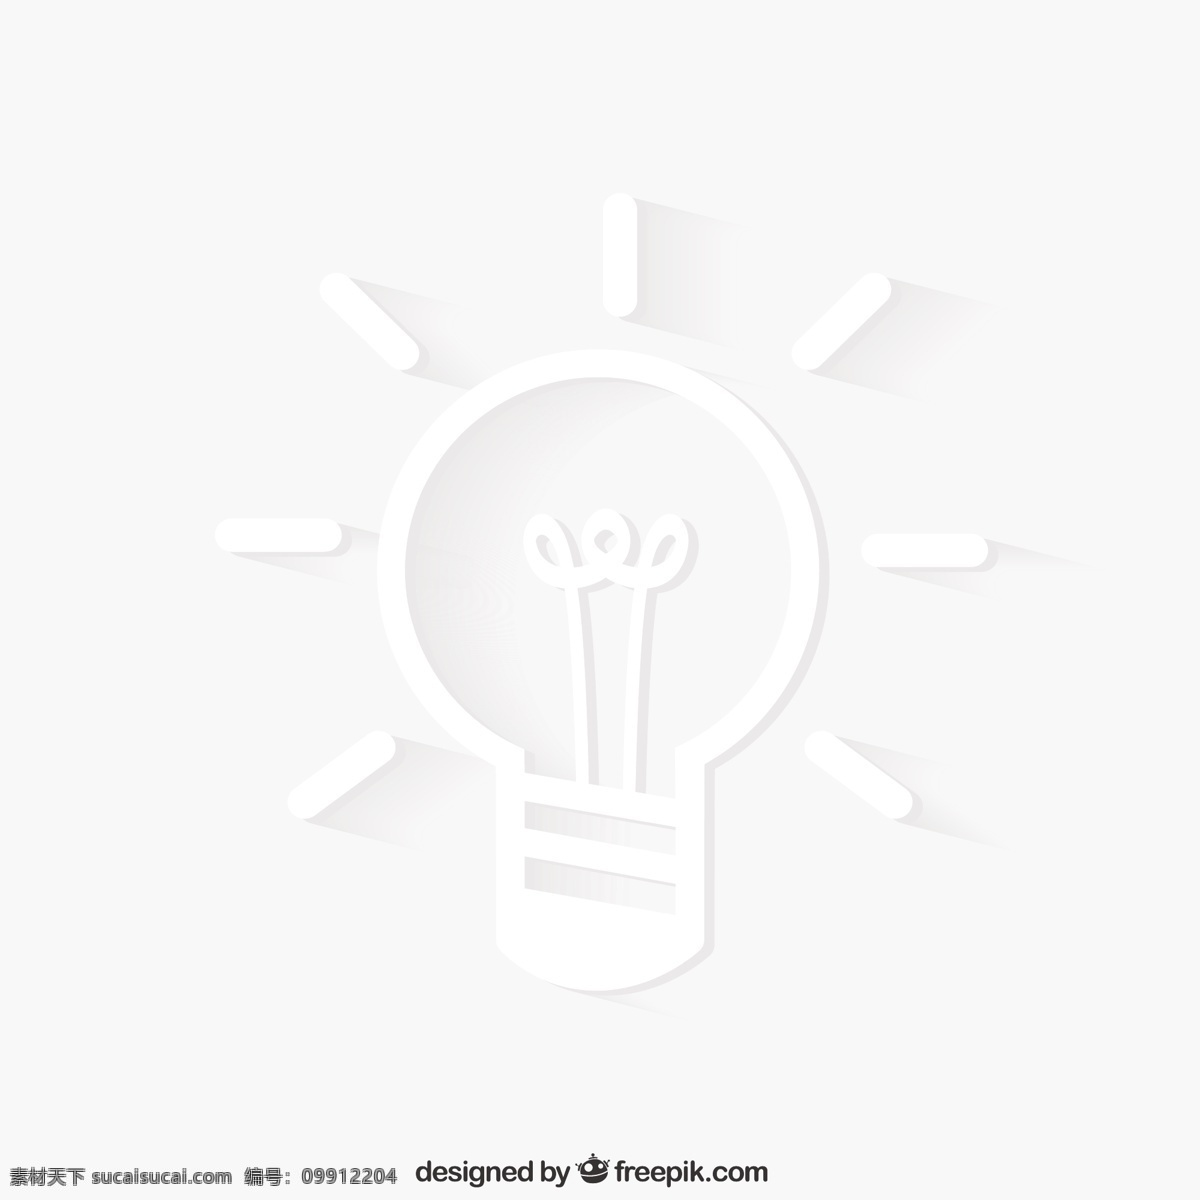 思想观念 灯 主意 灯泡 创意 电源 电 白 解决方案 灵感 概念 想象 照明 白色